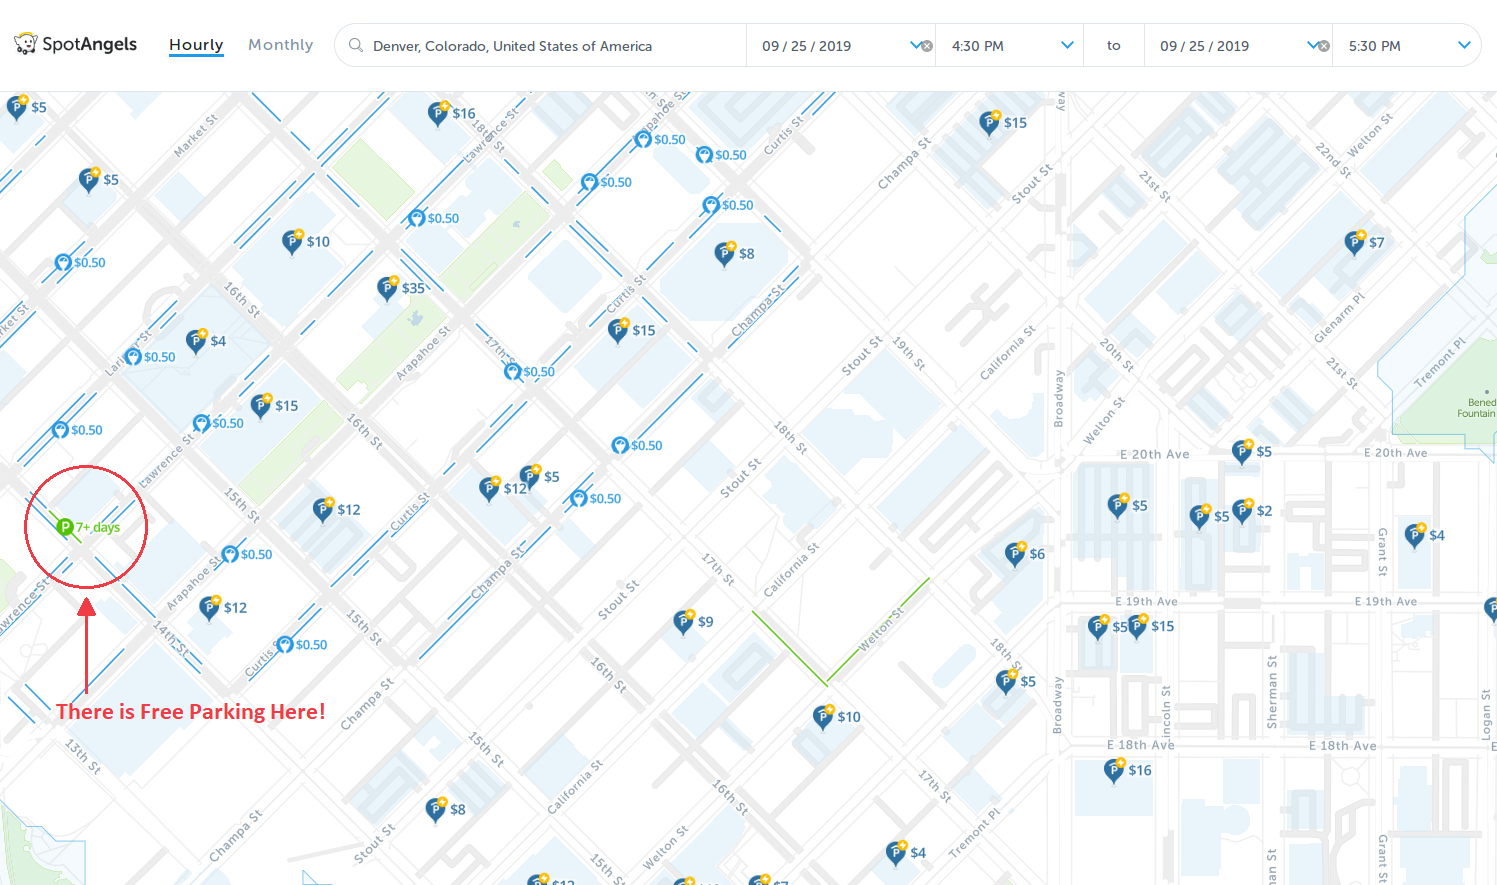 map of free parking in Denver - SpotAngels